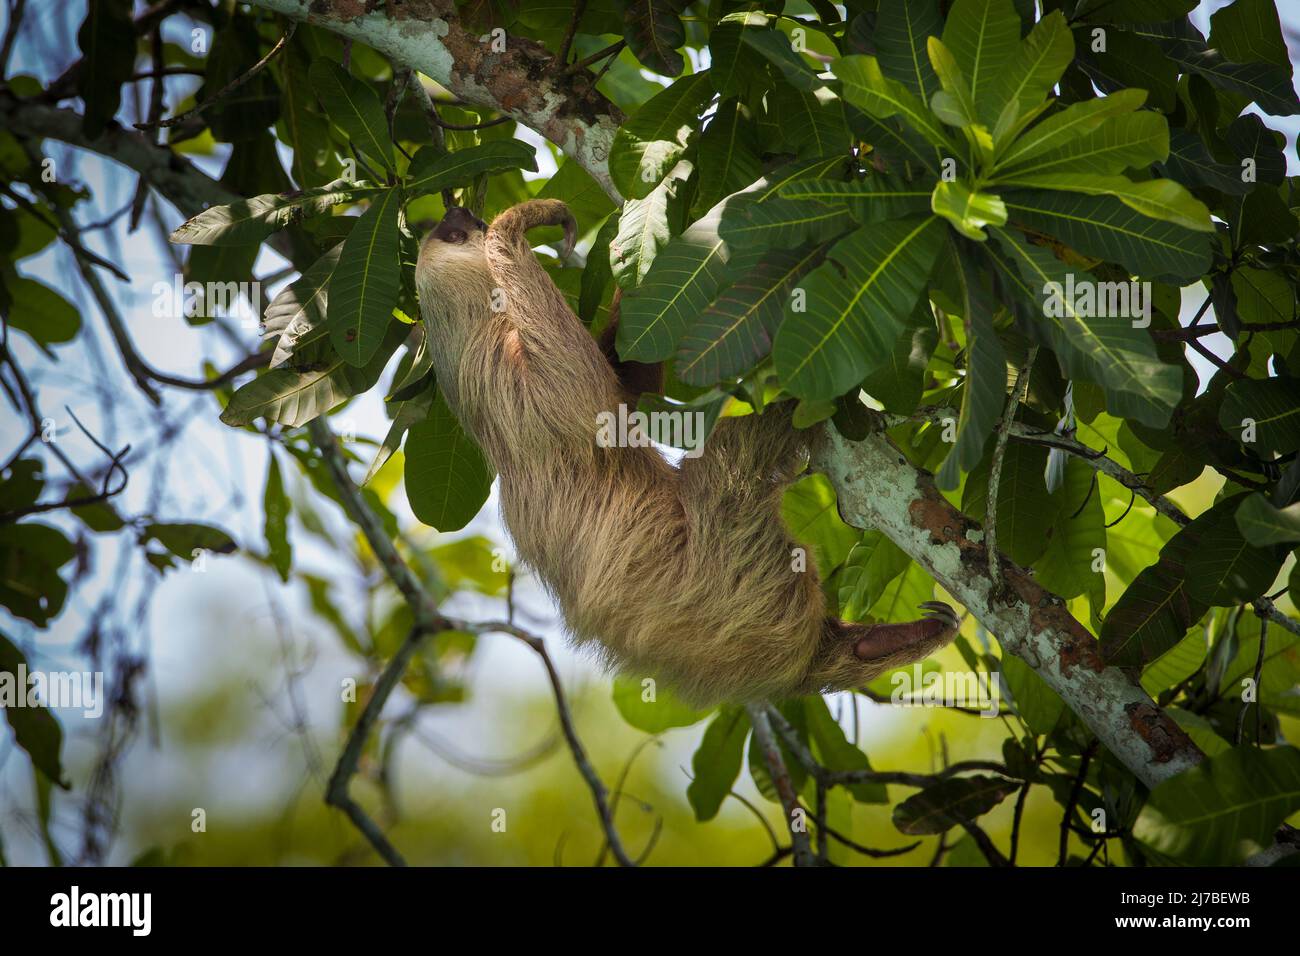 Sloth de dos dedos, Choloepus hoffmanni, en la selva tropical del Parque Nacional Soberania, provincia de Colón, República de Panamá, Centroamérica. Foto de stock